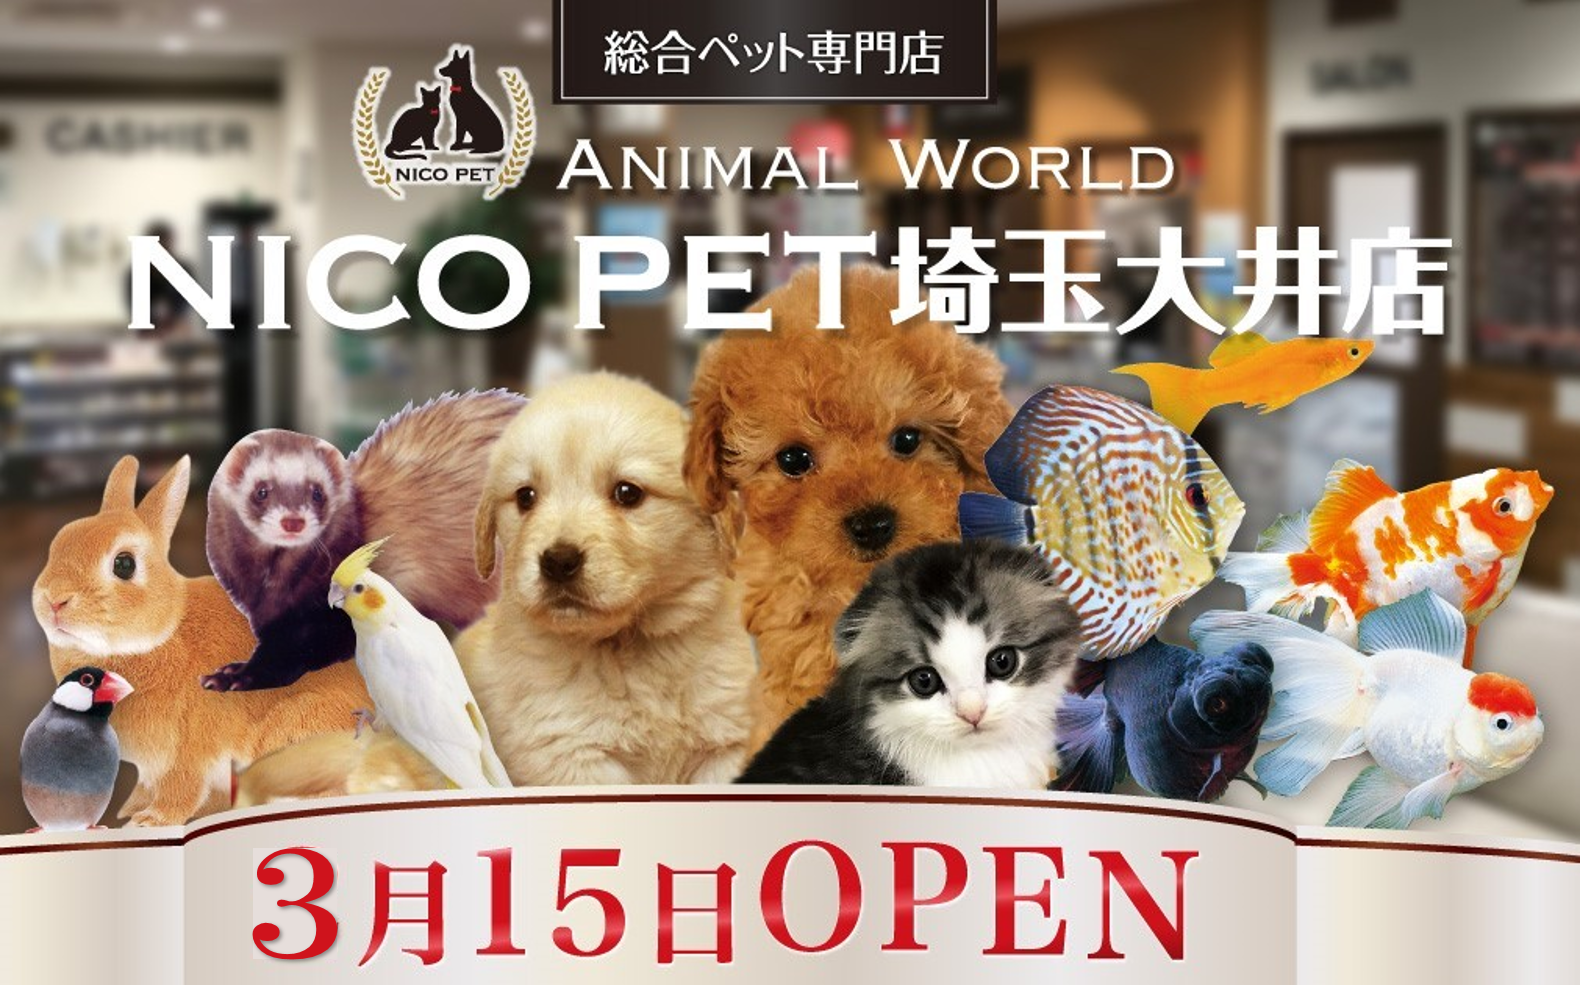 スーパービバホーム埼⽟⼤井店に総合ペット専⾨店のNICO PETを
オープン